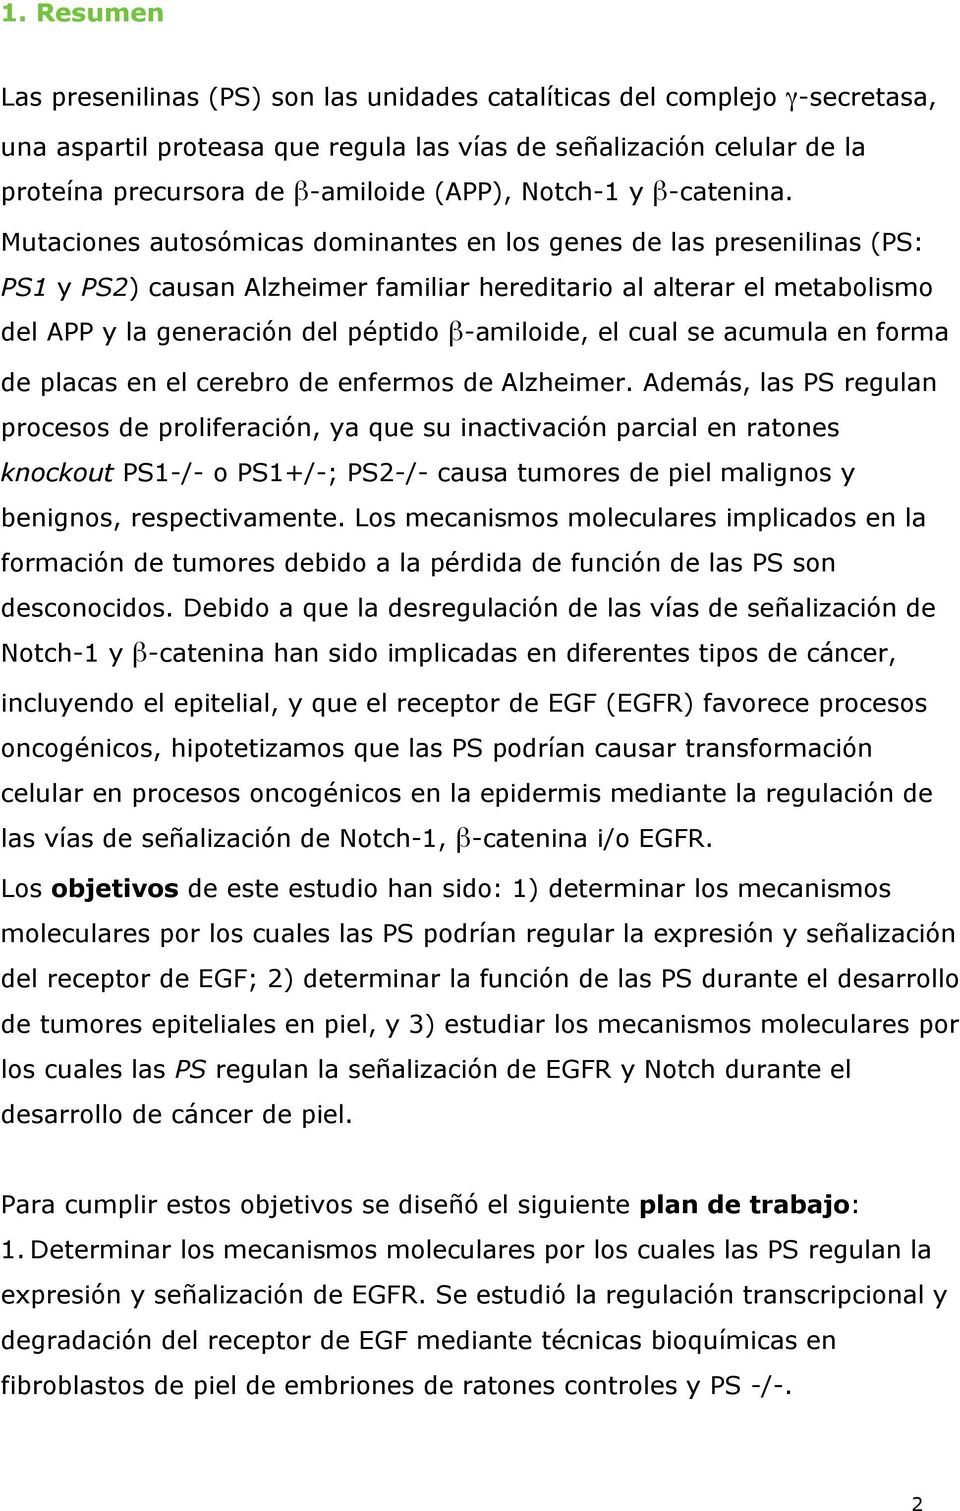 Mutaciones autosómicas dominantes en los genes de las presenilinas (PS: PS1 y PS2) causan Alzheimer familiar hereditario al alterar el metabolismo del APP y la generación del péptido β-amiloide, el